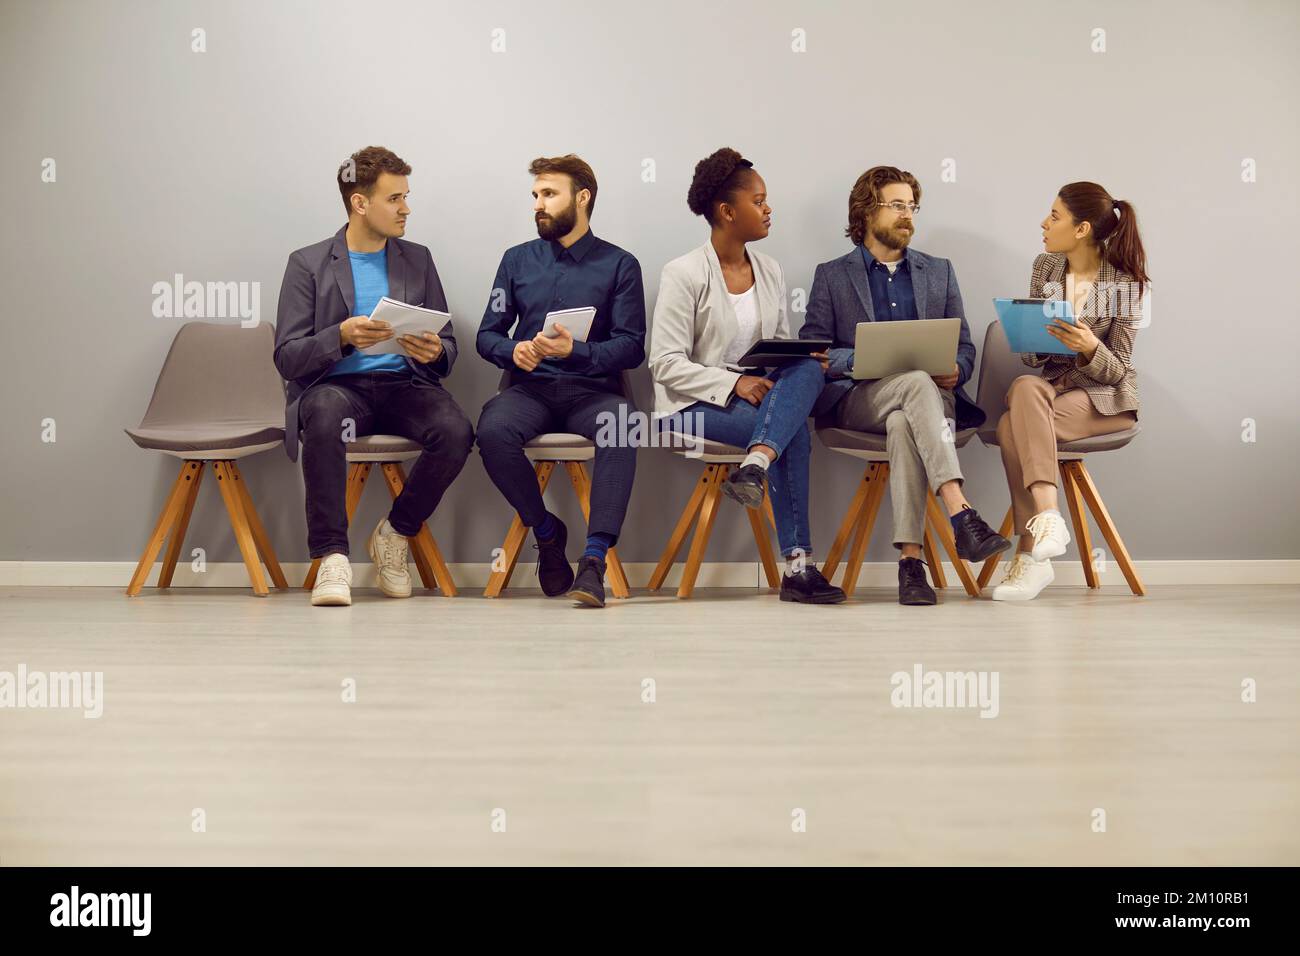 Eine vielfältige Gruppe von Personen, die sich unterhalten, während sie im Büro sitzen und auf ein Vorstellungsgespräch warten Stockfoto